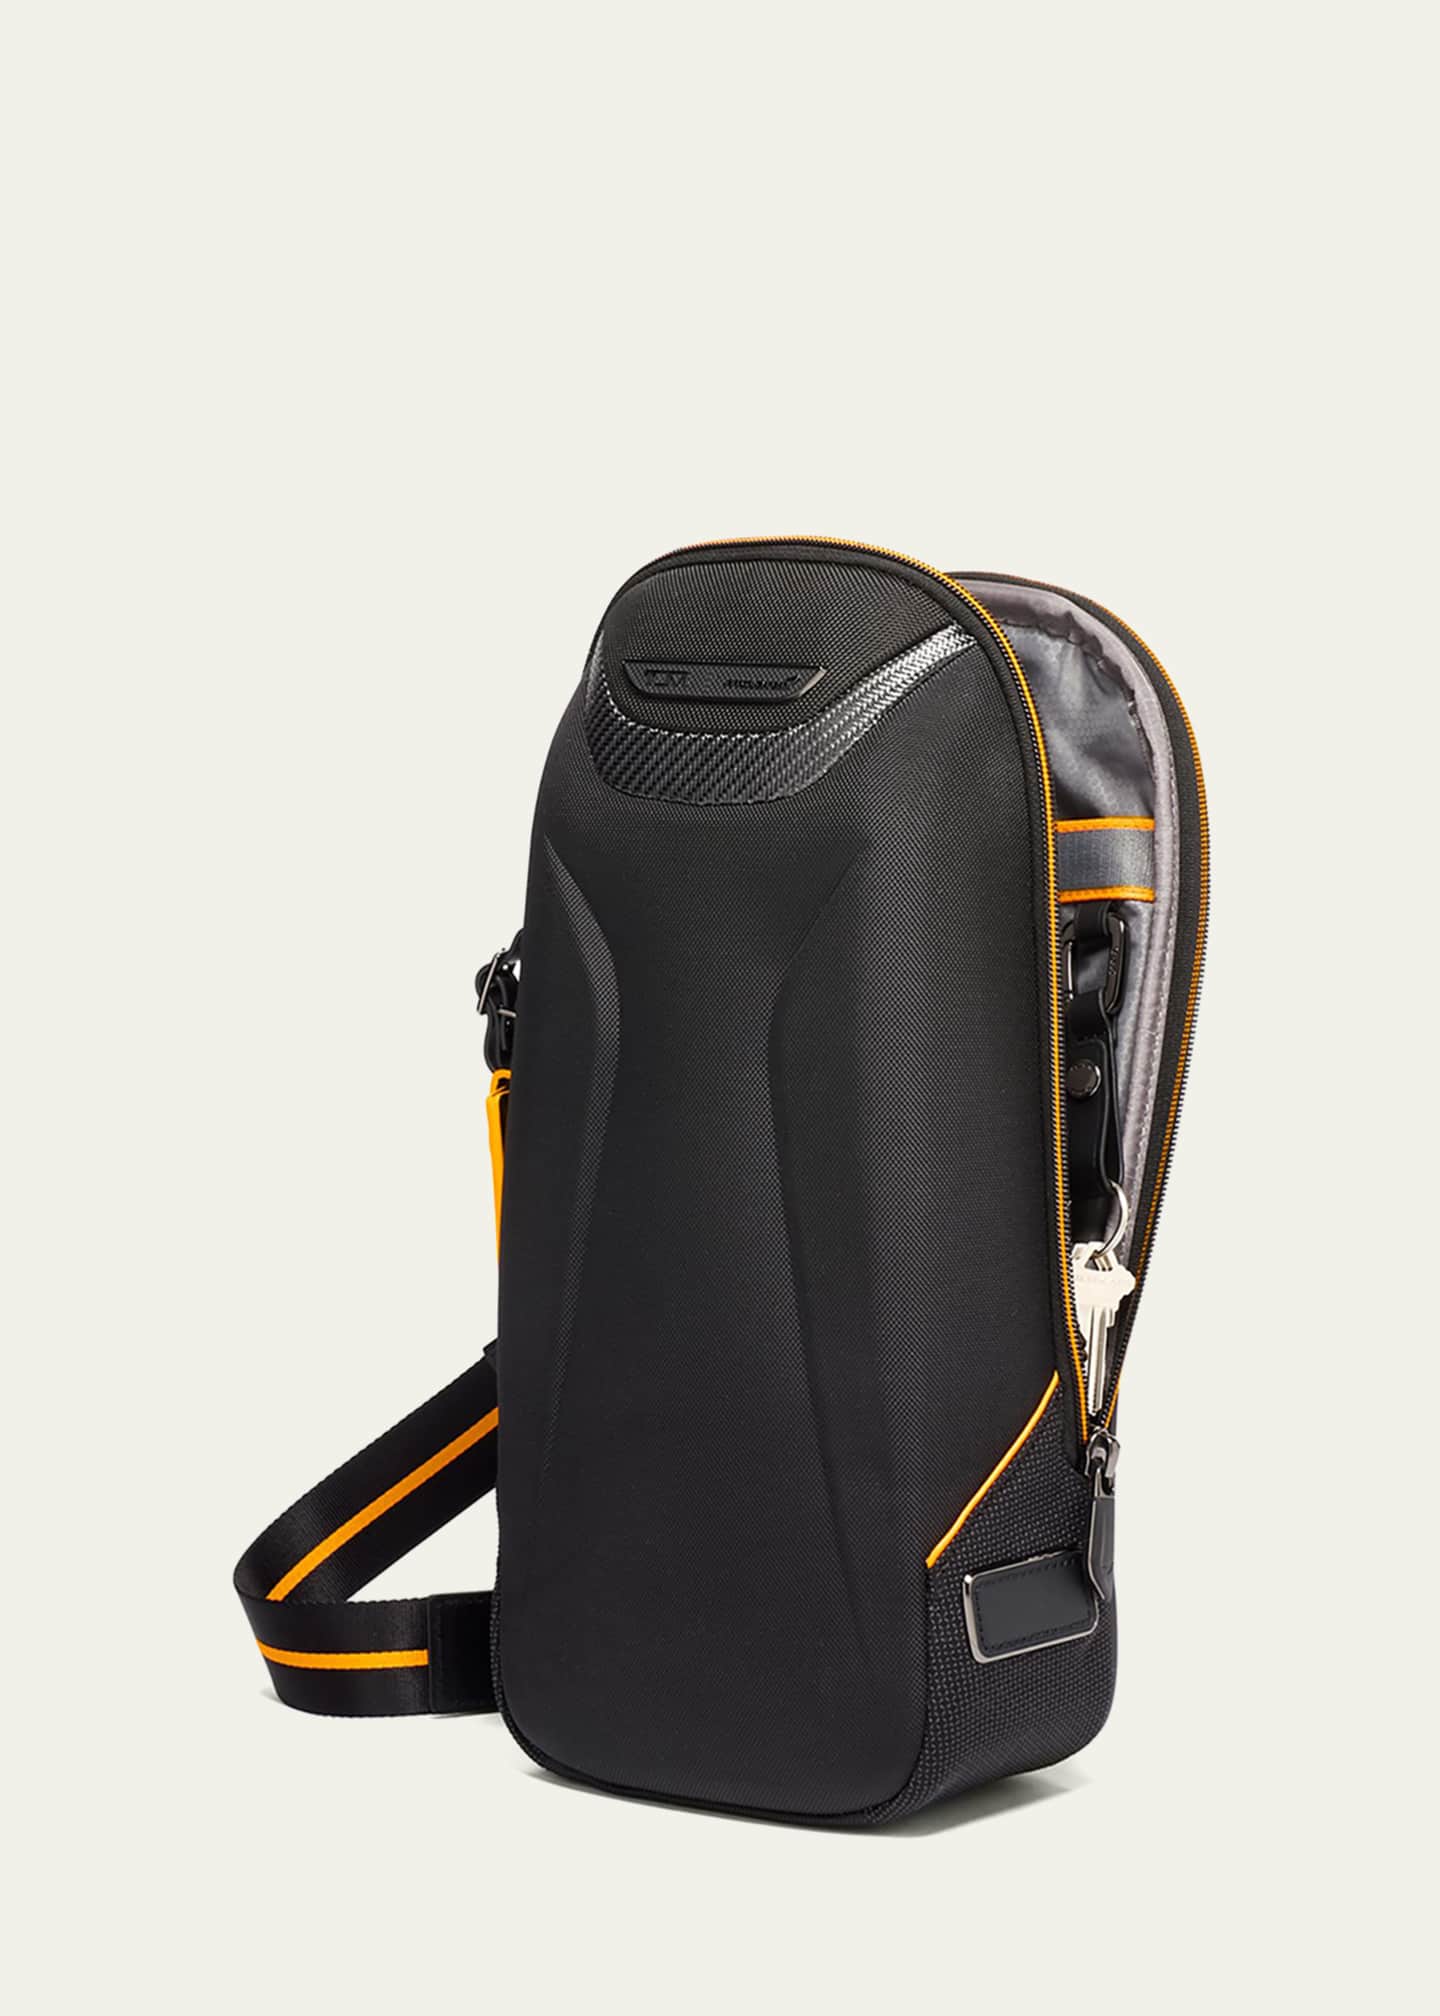 TUMI McLaren Torque Sling Backpack - Bergdorf Goodman